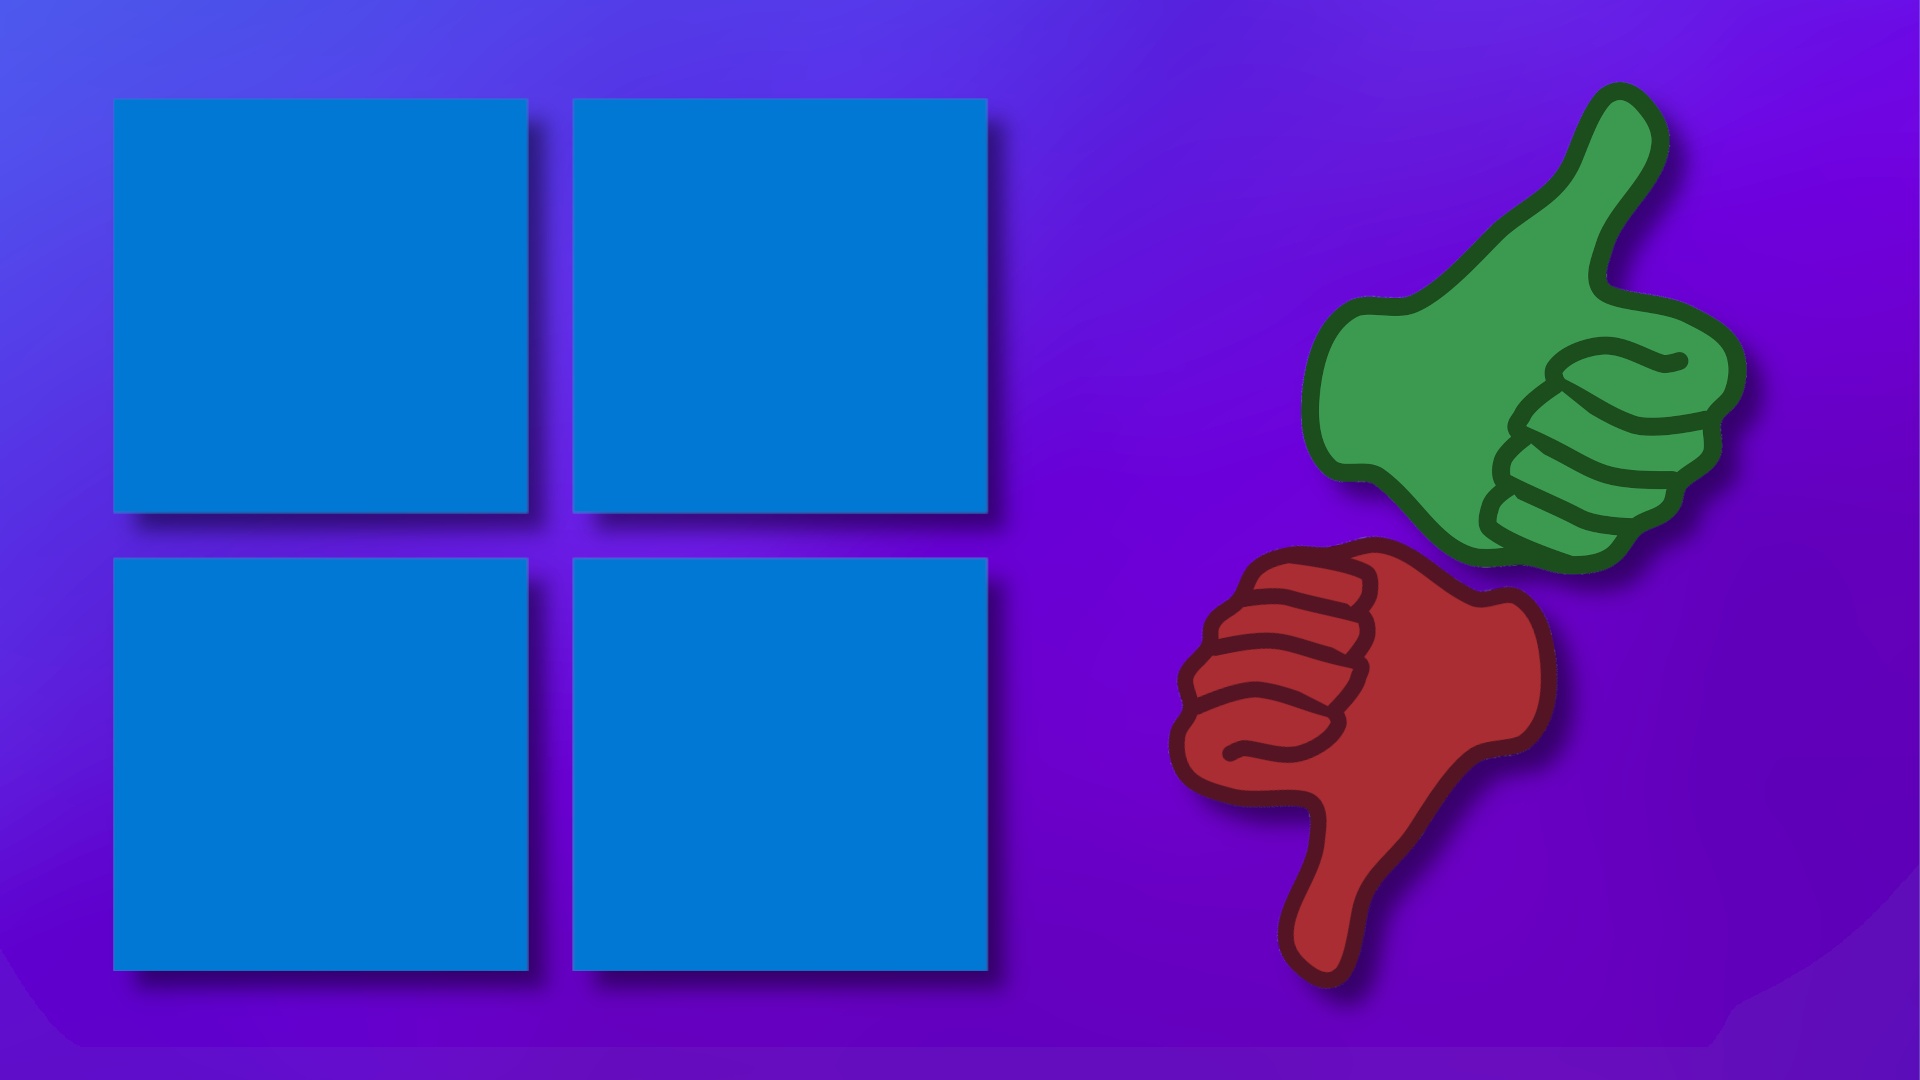 Upgrade auf Windows 11 - ja oder nein? 6 Gründe dafür und dagegen